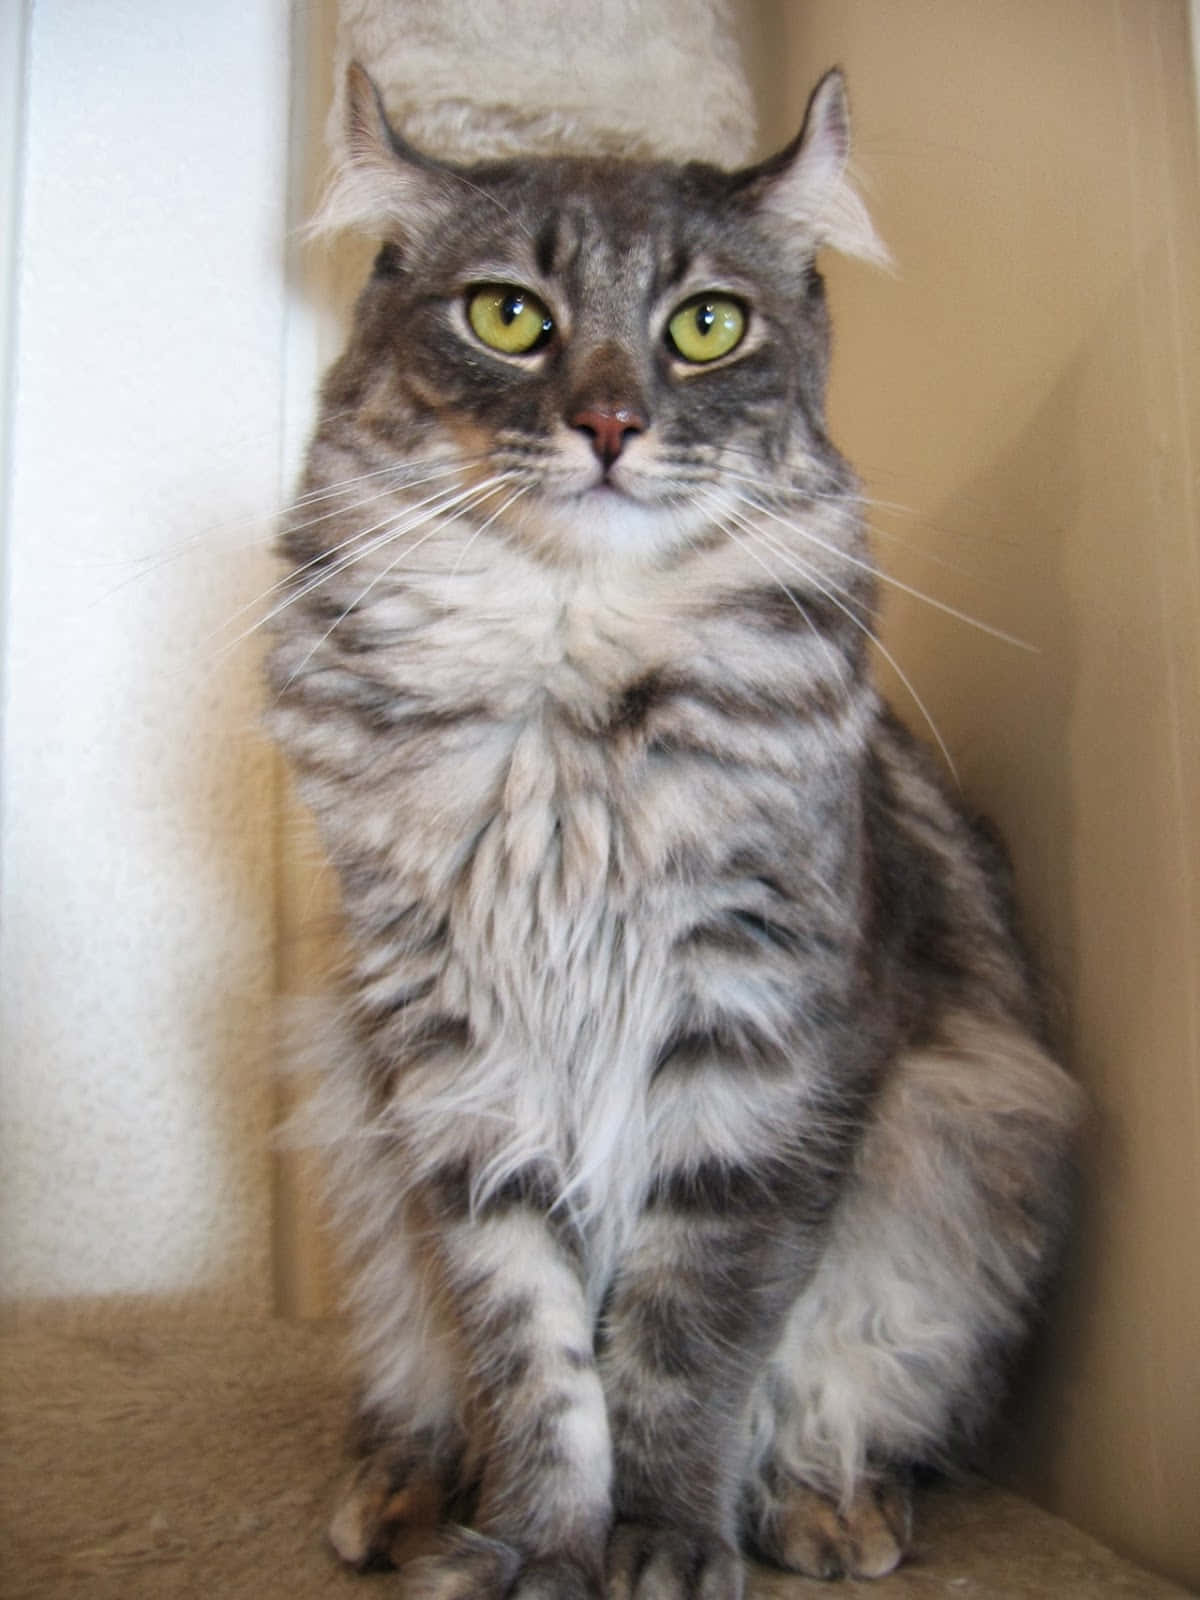 Adorable American Curl cat in playful pose Wallpaper